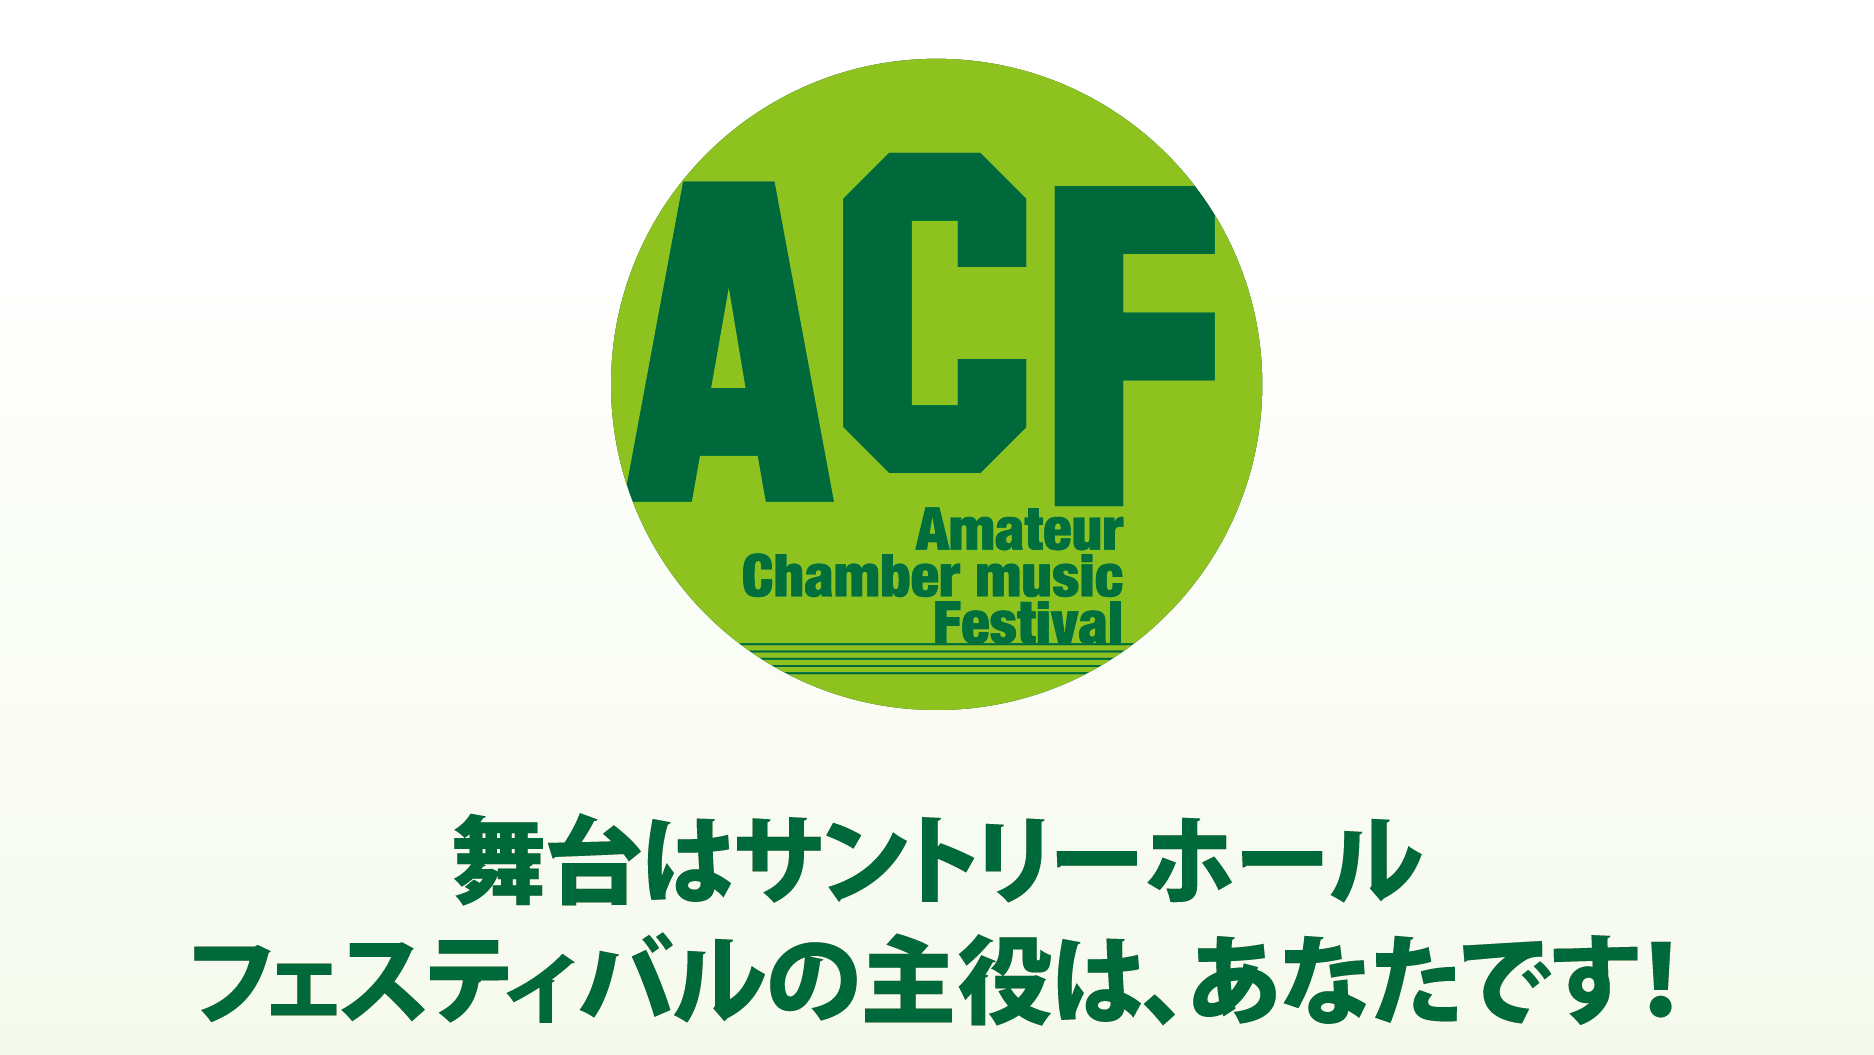 ACF 全国アマチュア室内楽フェスティバル2024
2月23日(金・祝)14時 サントリーホール ブルーローズ
いよいよ明日、開催！